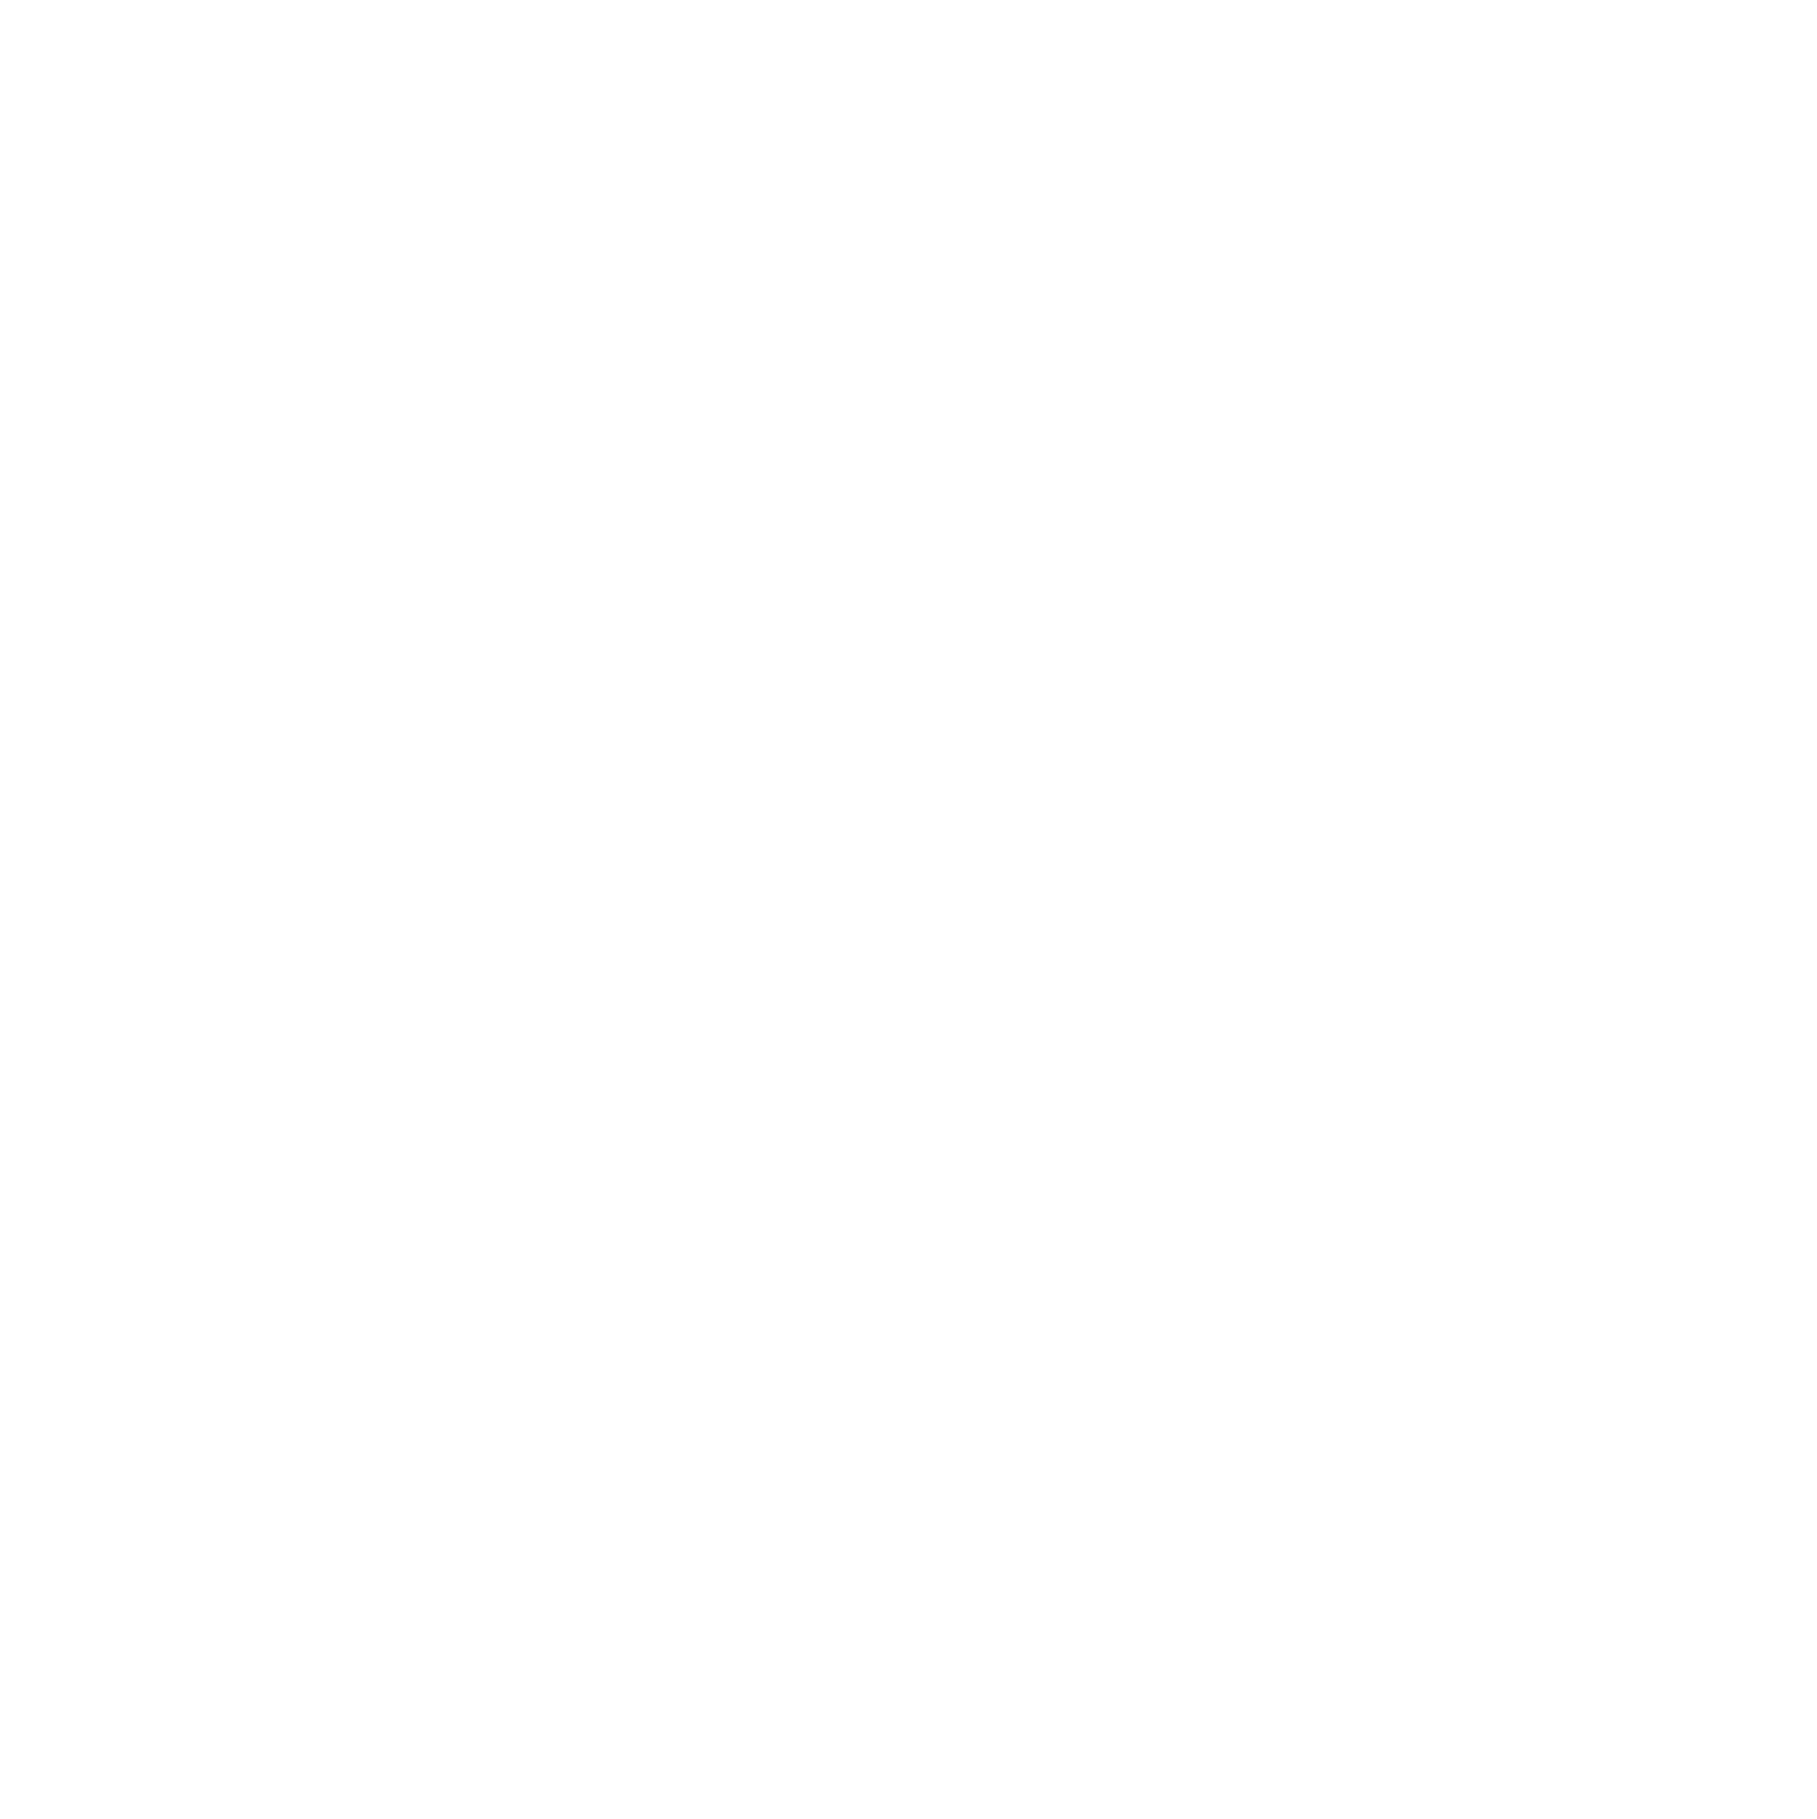 Brightpoint Logo - BrightPoint Realty Group